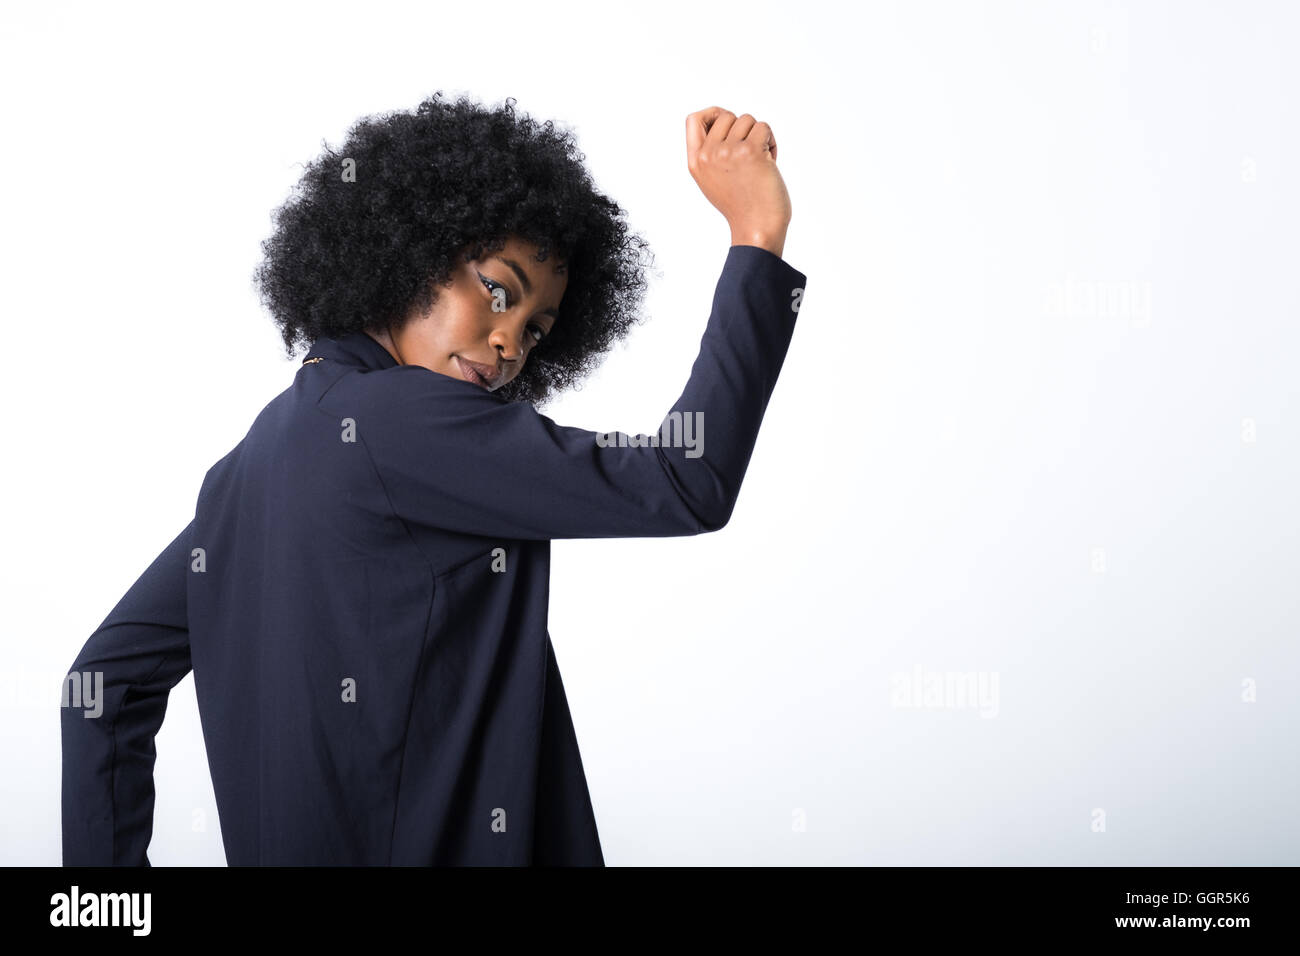 Afro-caraibica donna nella sua 20s di ripresa delle immagini di moda Foto Stock